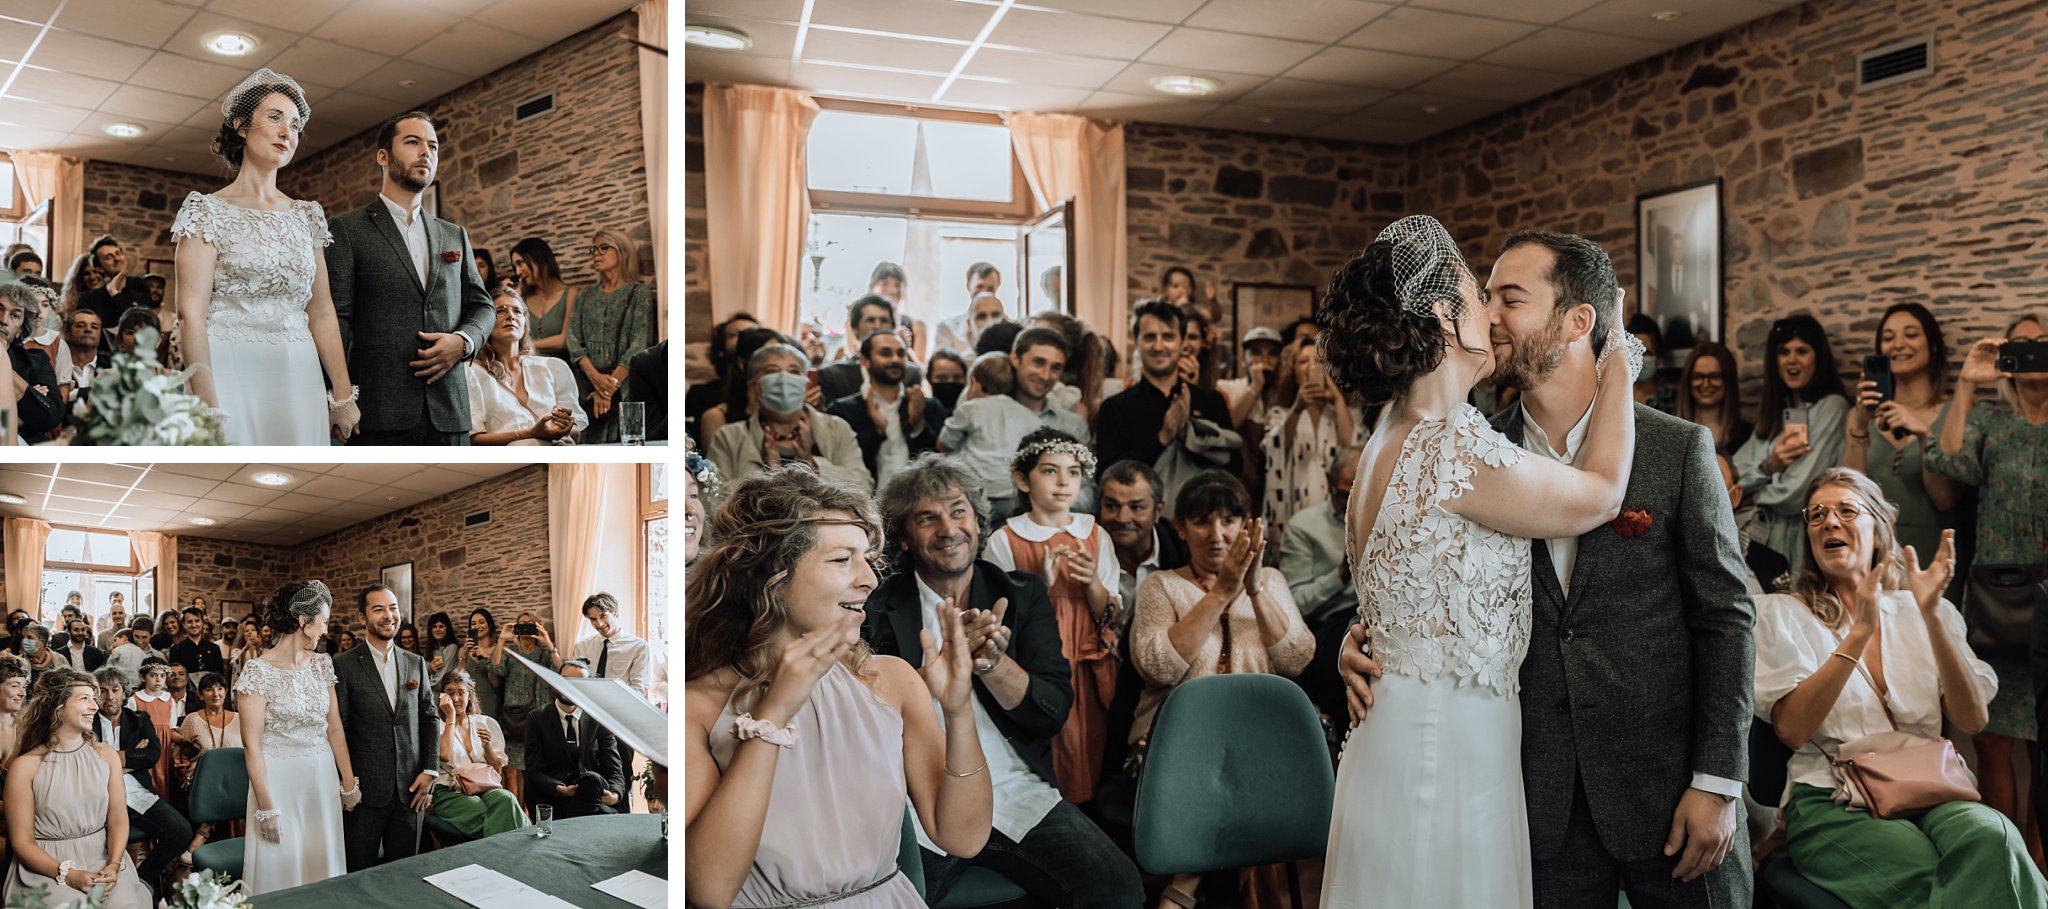 les mariés se sont dit oui. Les gens applaudissent lorsque les mariés s'embrassent,Un reportage photo mariage en Bretagne sur le thème champêtre et bohème